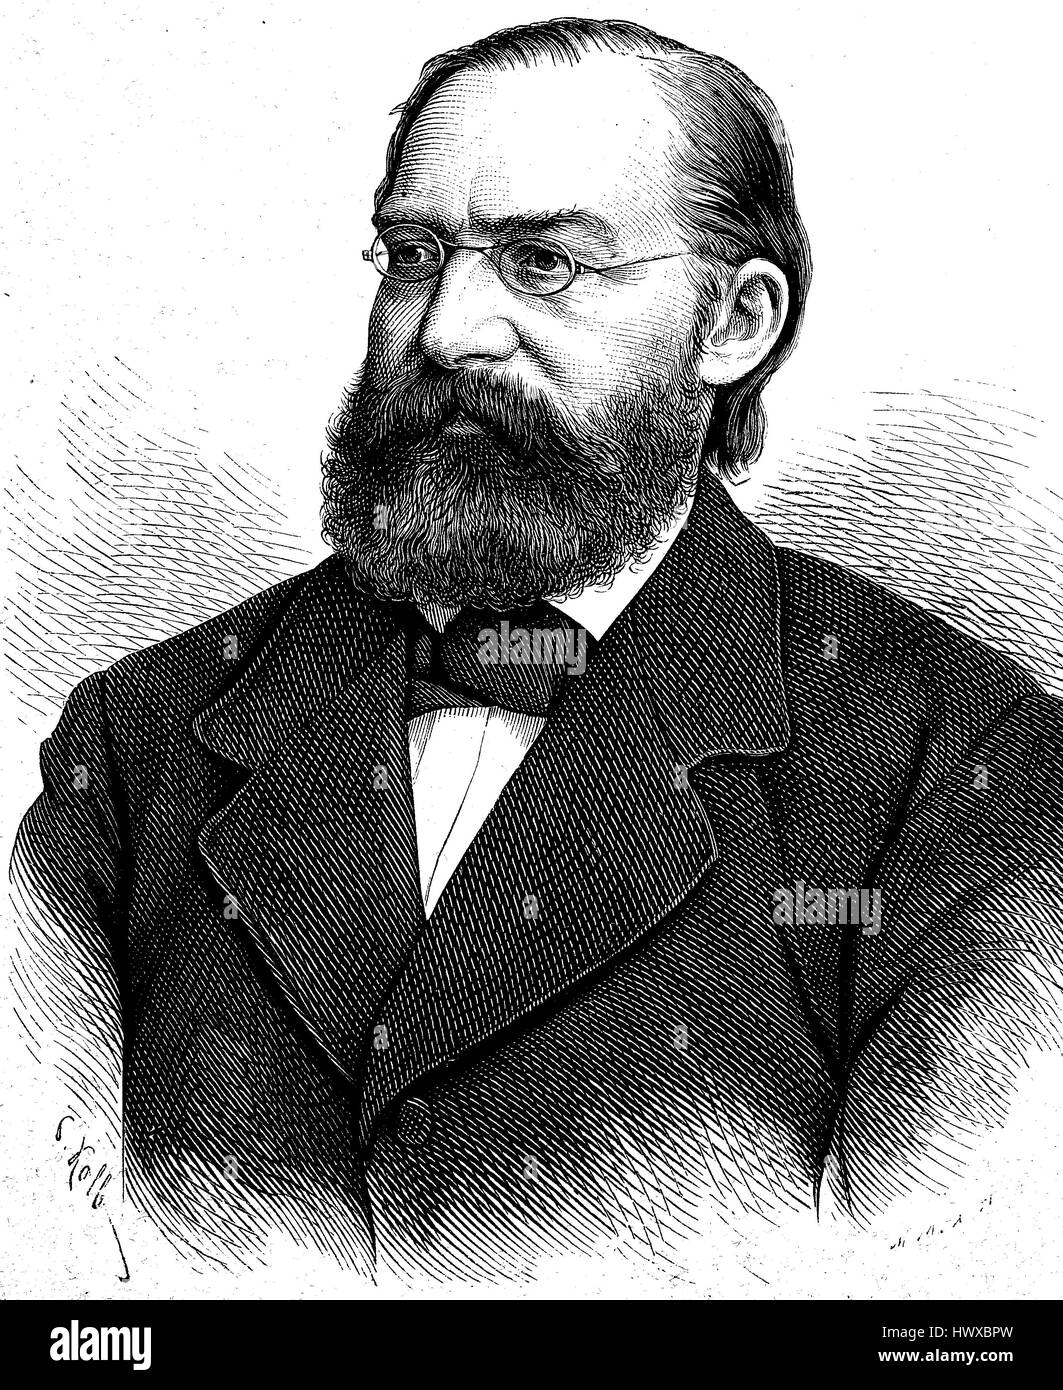 Wilhelm Wehrenpfennig, 25 marzo 1829 - 25 luglio 1900, era un ufficiale prussiano, Tedesco giornalista e politico, membro del Reichstag, la Germania, la riproduzione di una immagine, la xilografia a partire dall'anno 1881, digitale migliorata Foto Stock